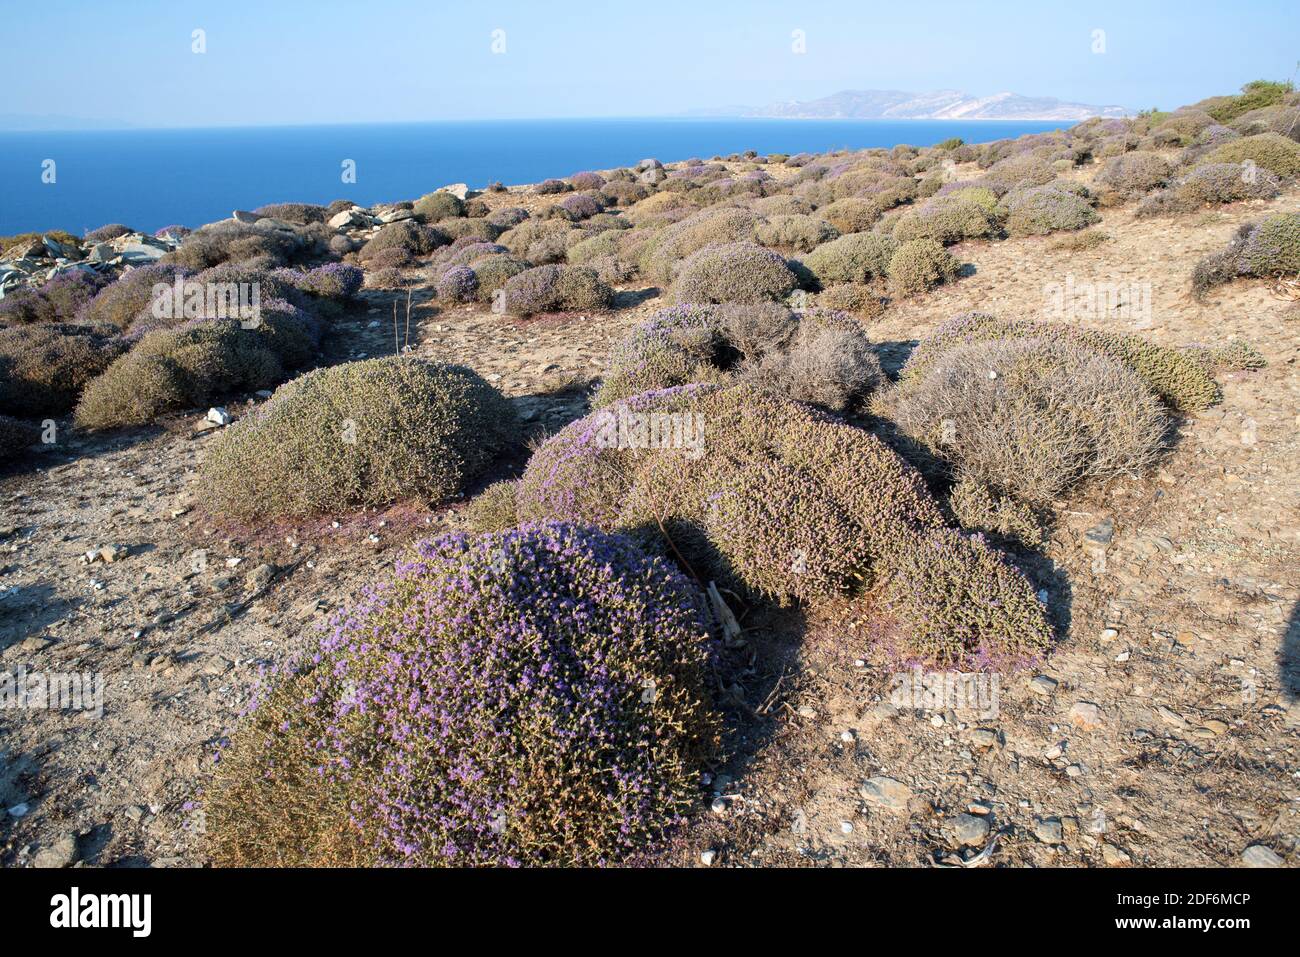 L'origano spagnolo (Thymus capitatus, Thymbra capitata o Coridothymus capitatus) è un arbusto medicinale e compatto originario delle regioni costiere del Foto Stock